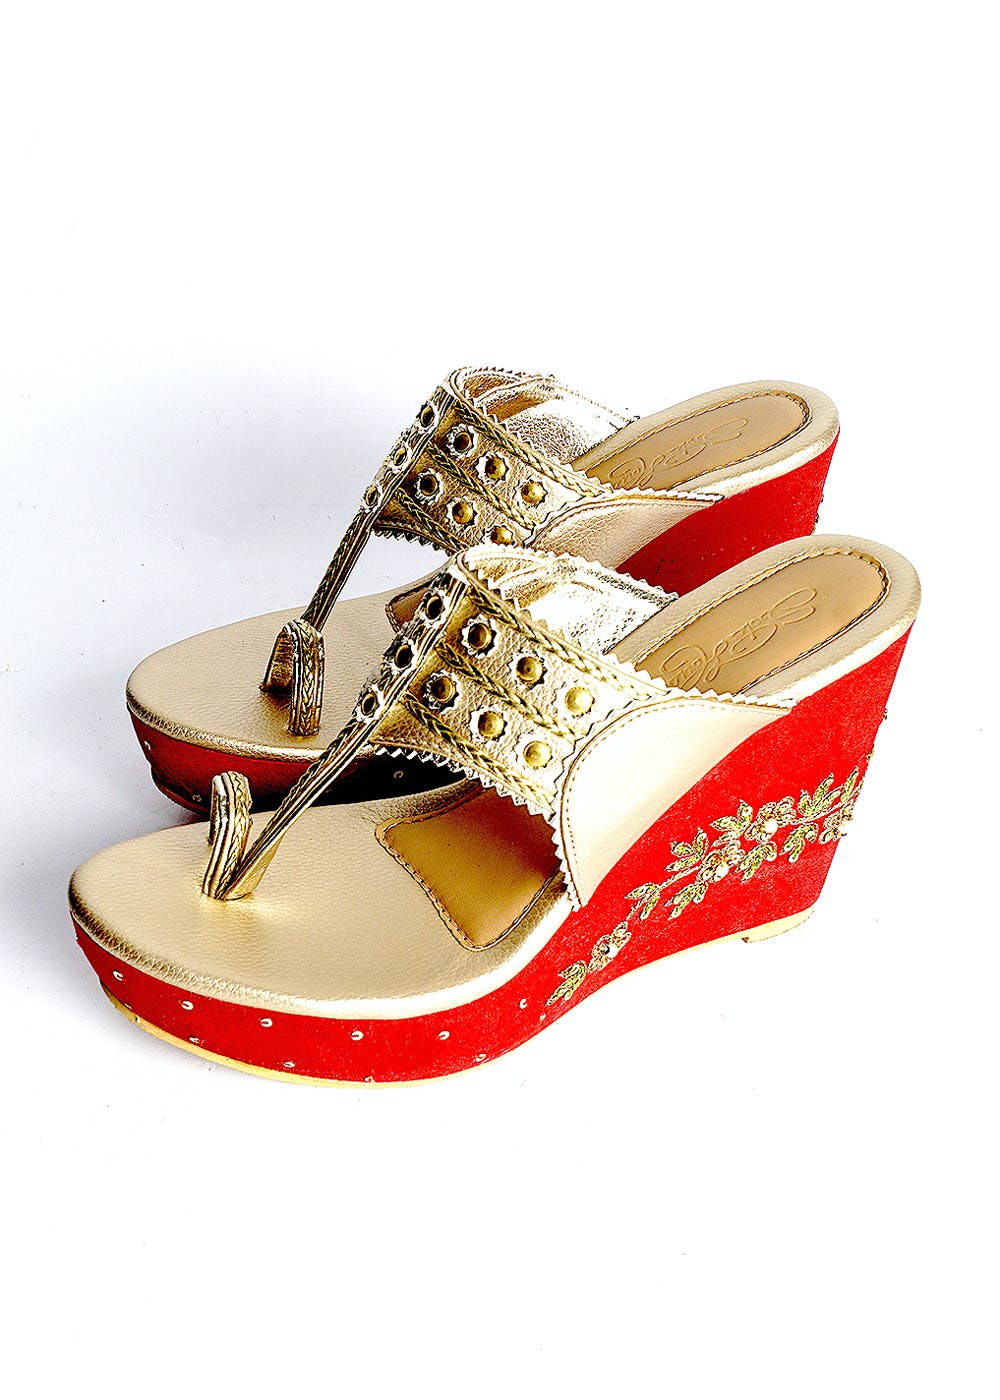 fcity.in - Fabulous Women Bridal Diamond Heel Sandal / Colorful Women Heels